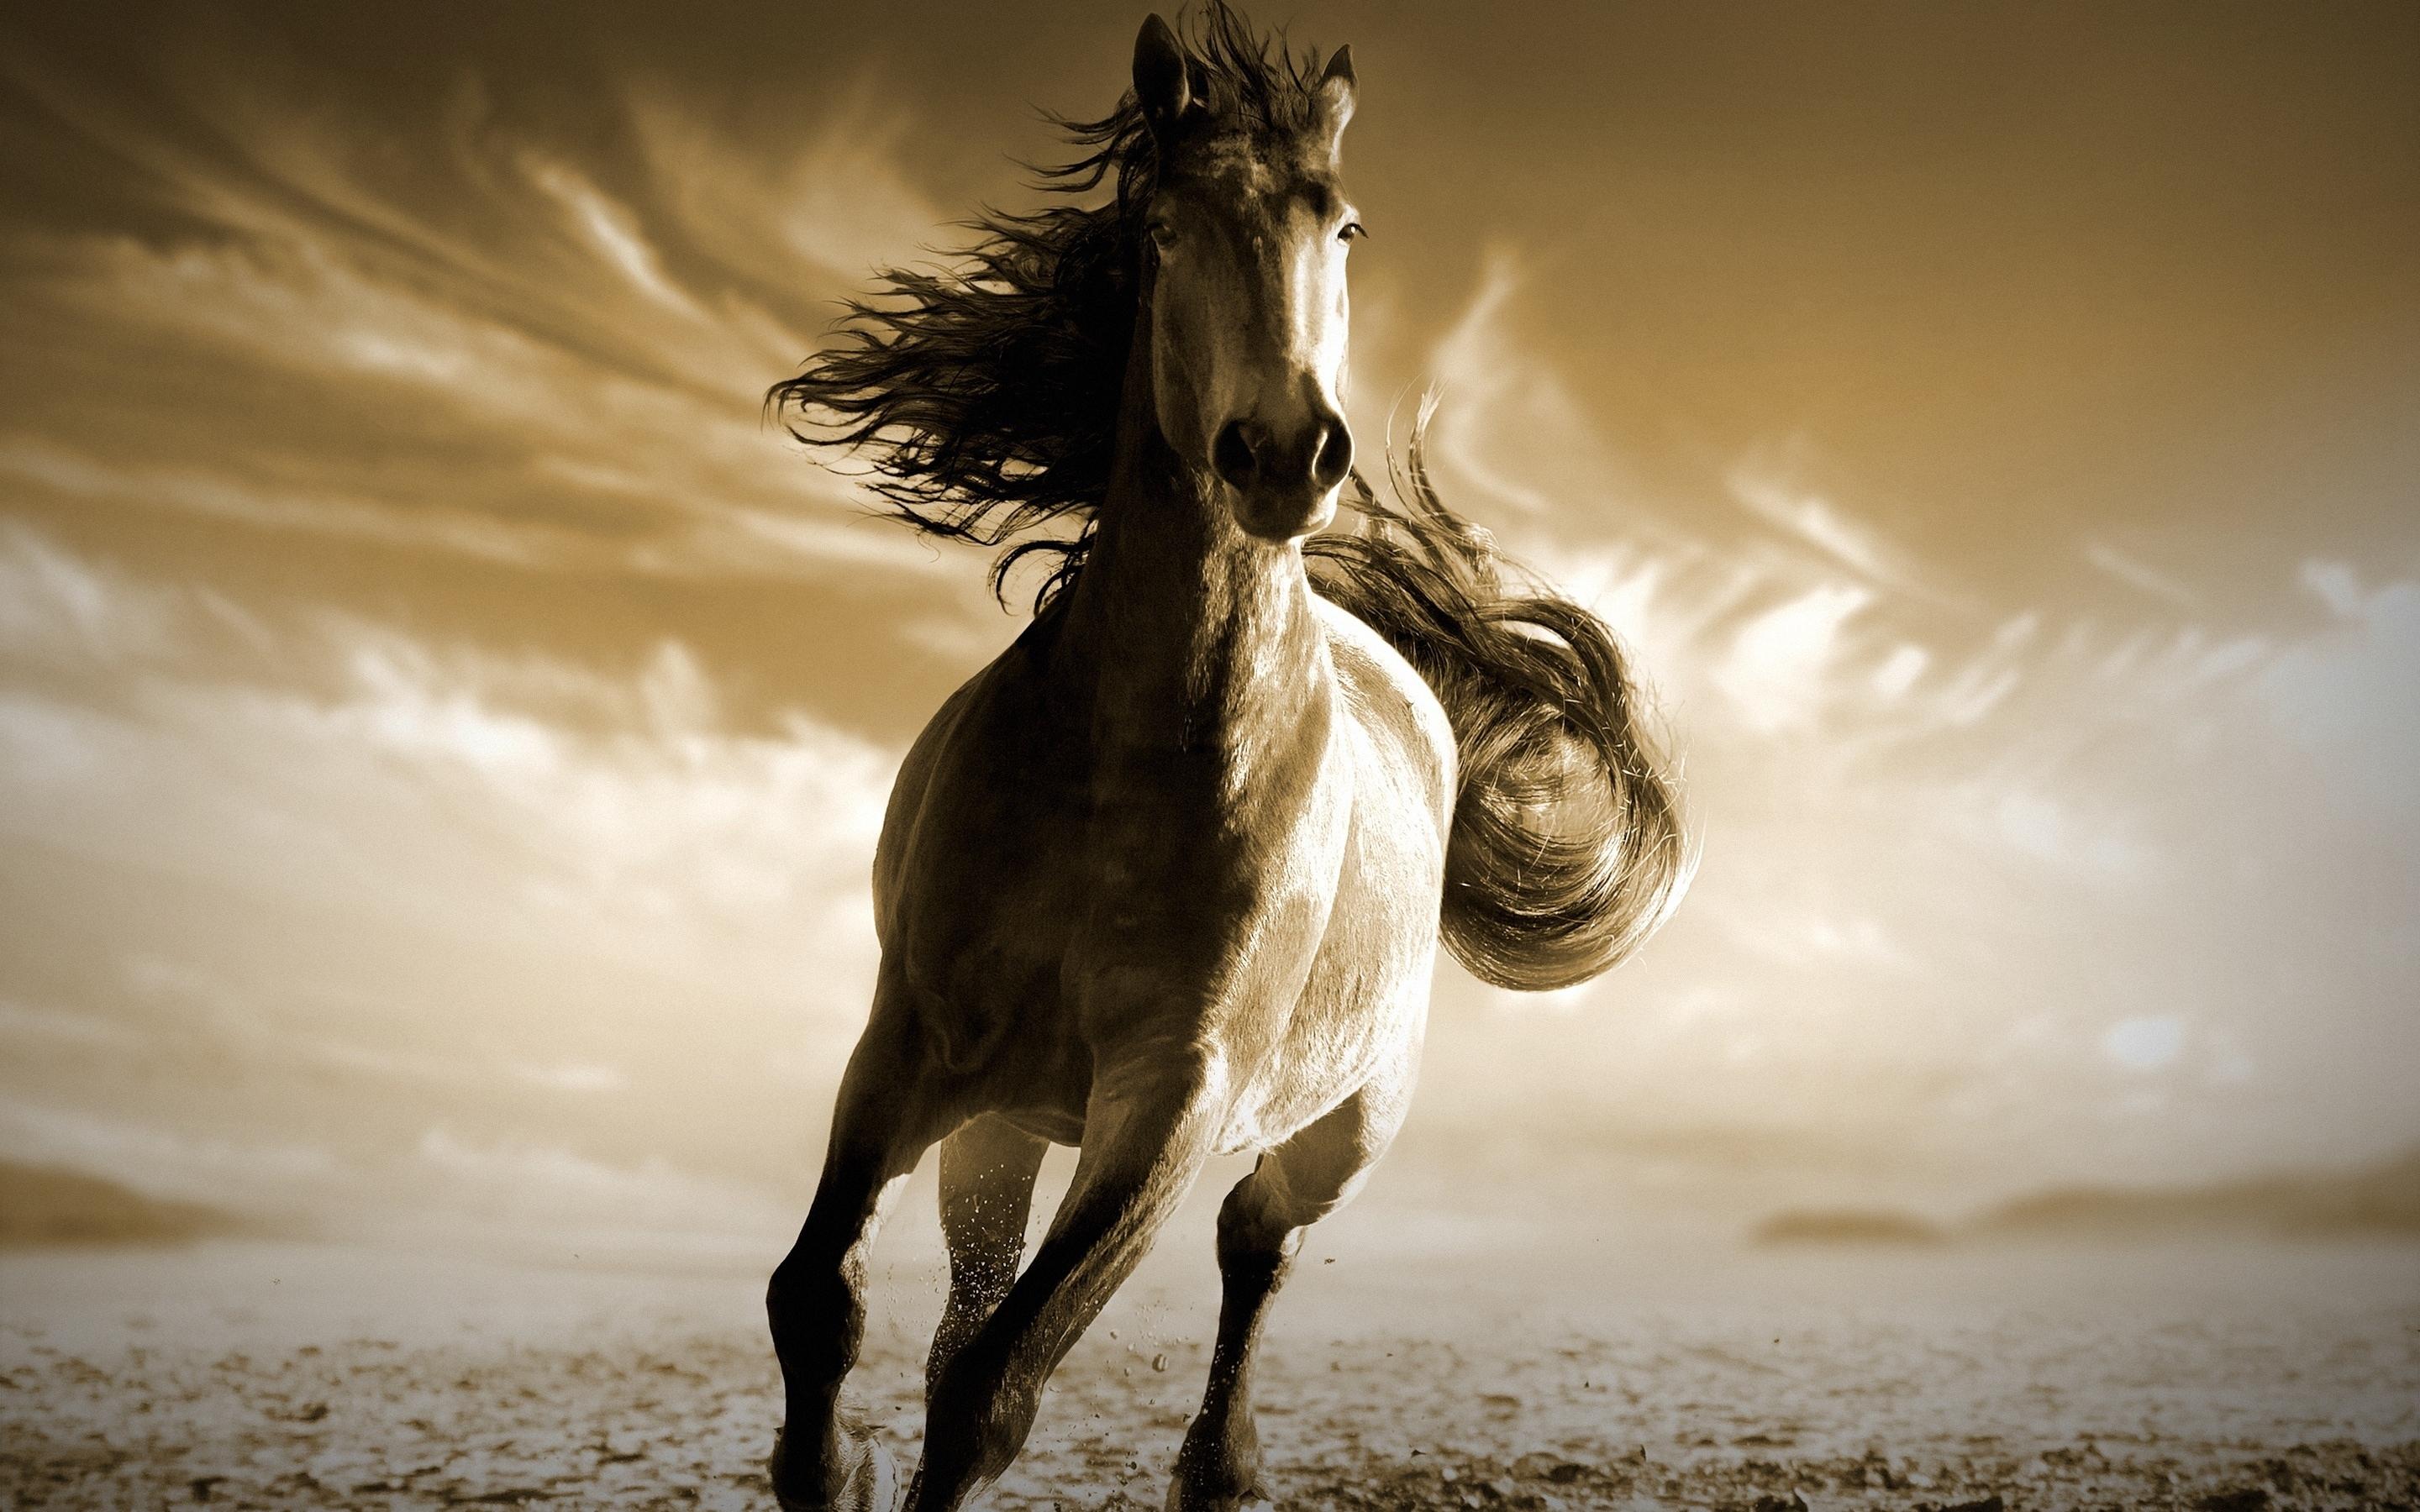 Running, horse, animal, 2880x1800 wallpaper